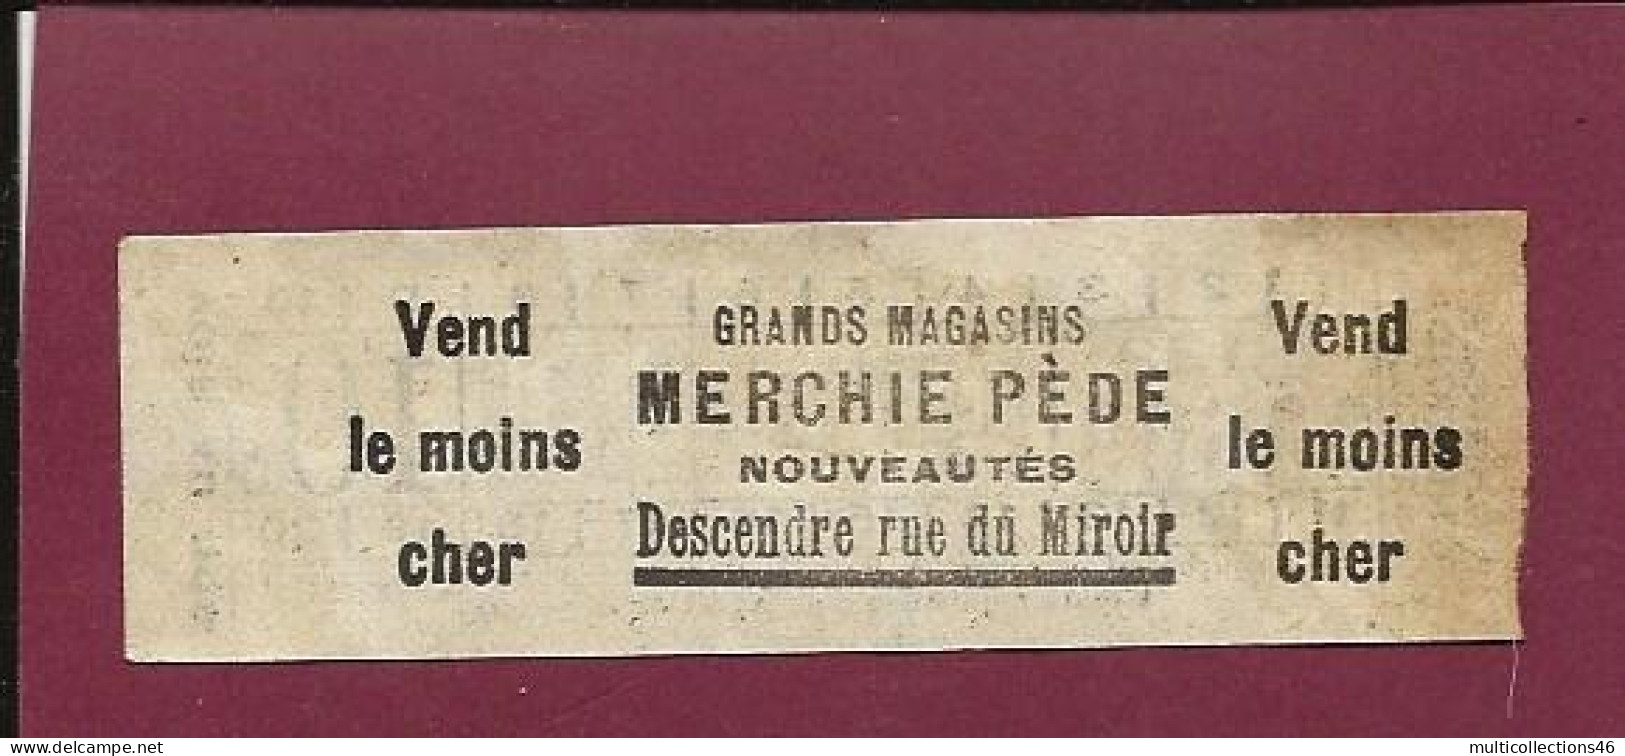 301223C - TICKET CHEMIN DE FER TRAM METRO - BELGIQUE BRUXELLES TRAM CAR NORD MIDI B138 03603 10c - Pub Au Verso  - Europe